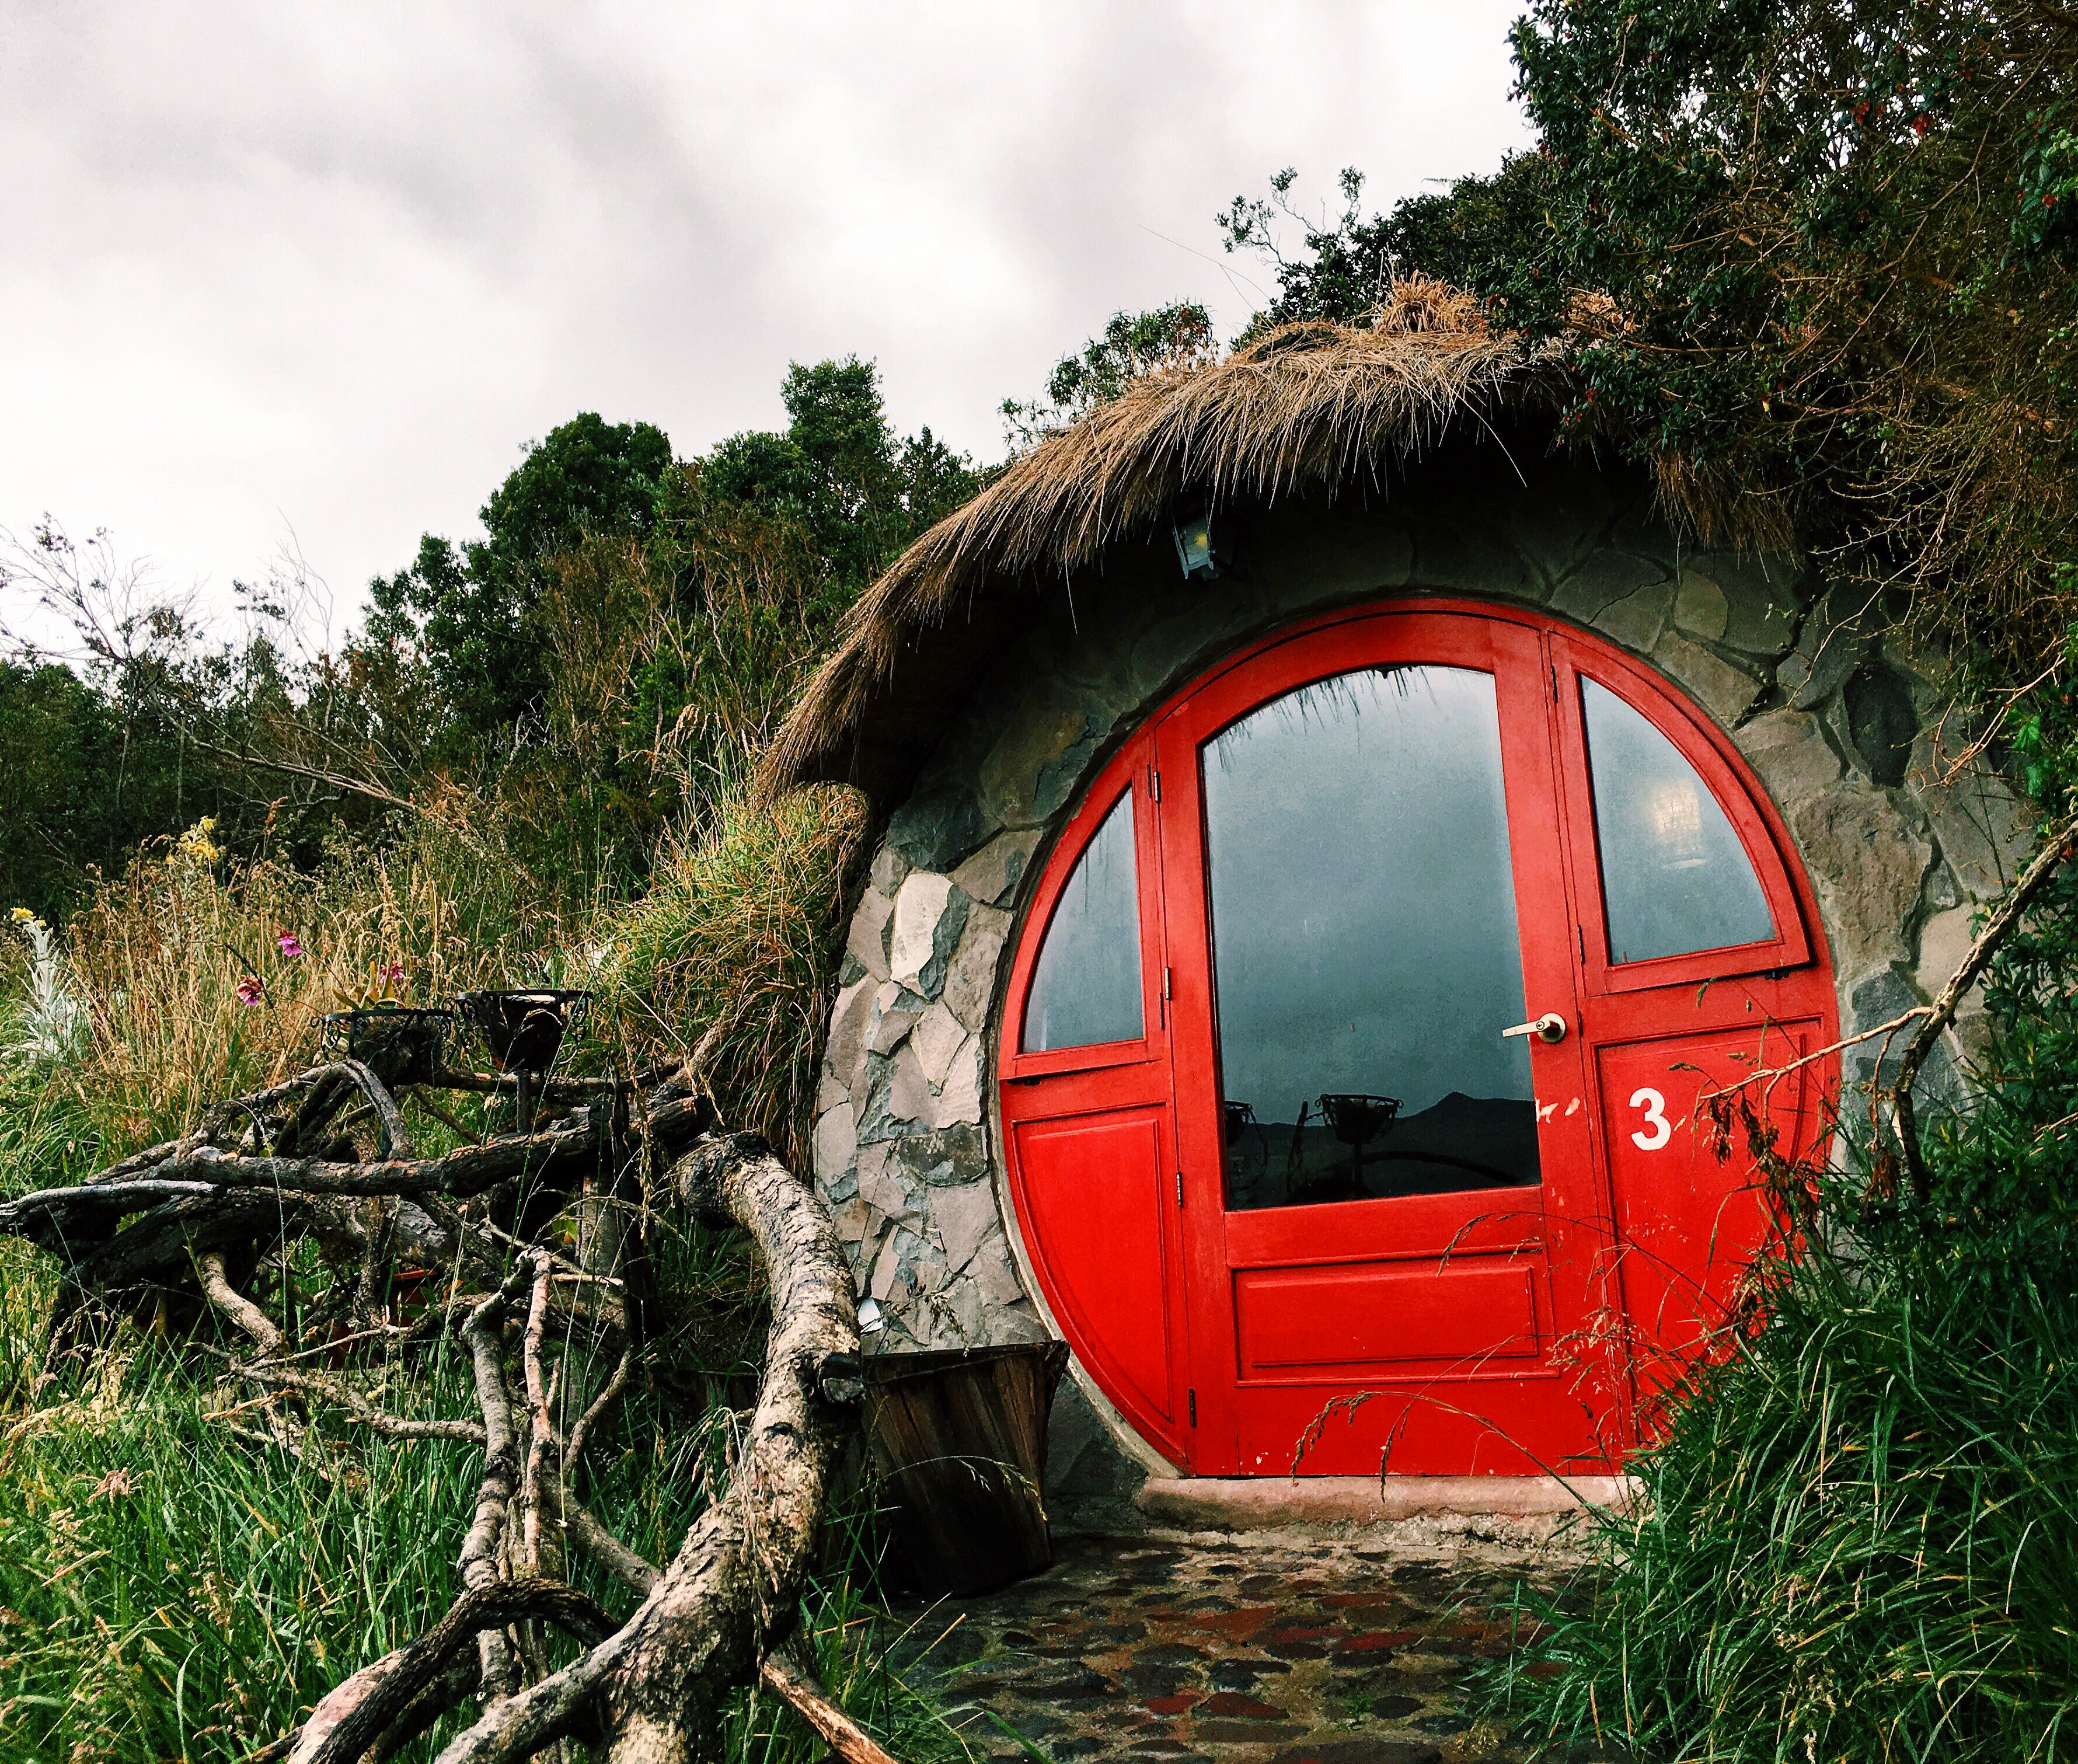 Hobbit homes at Cotopaxi